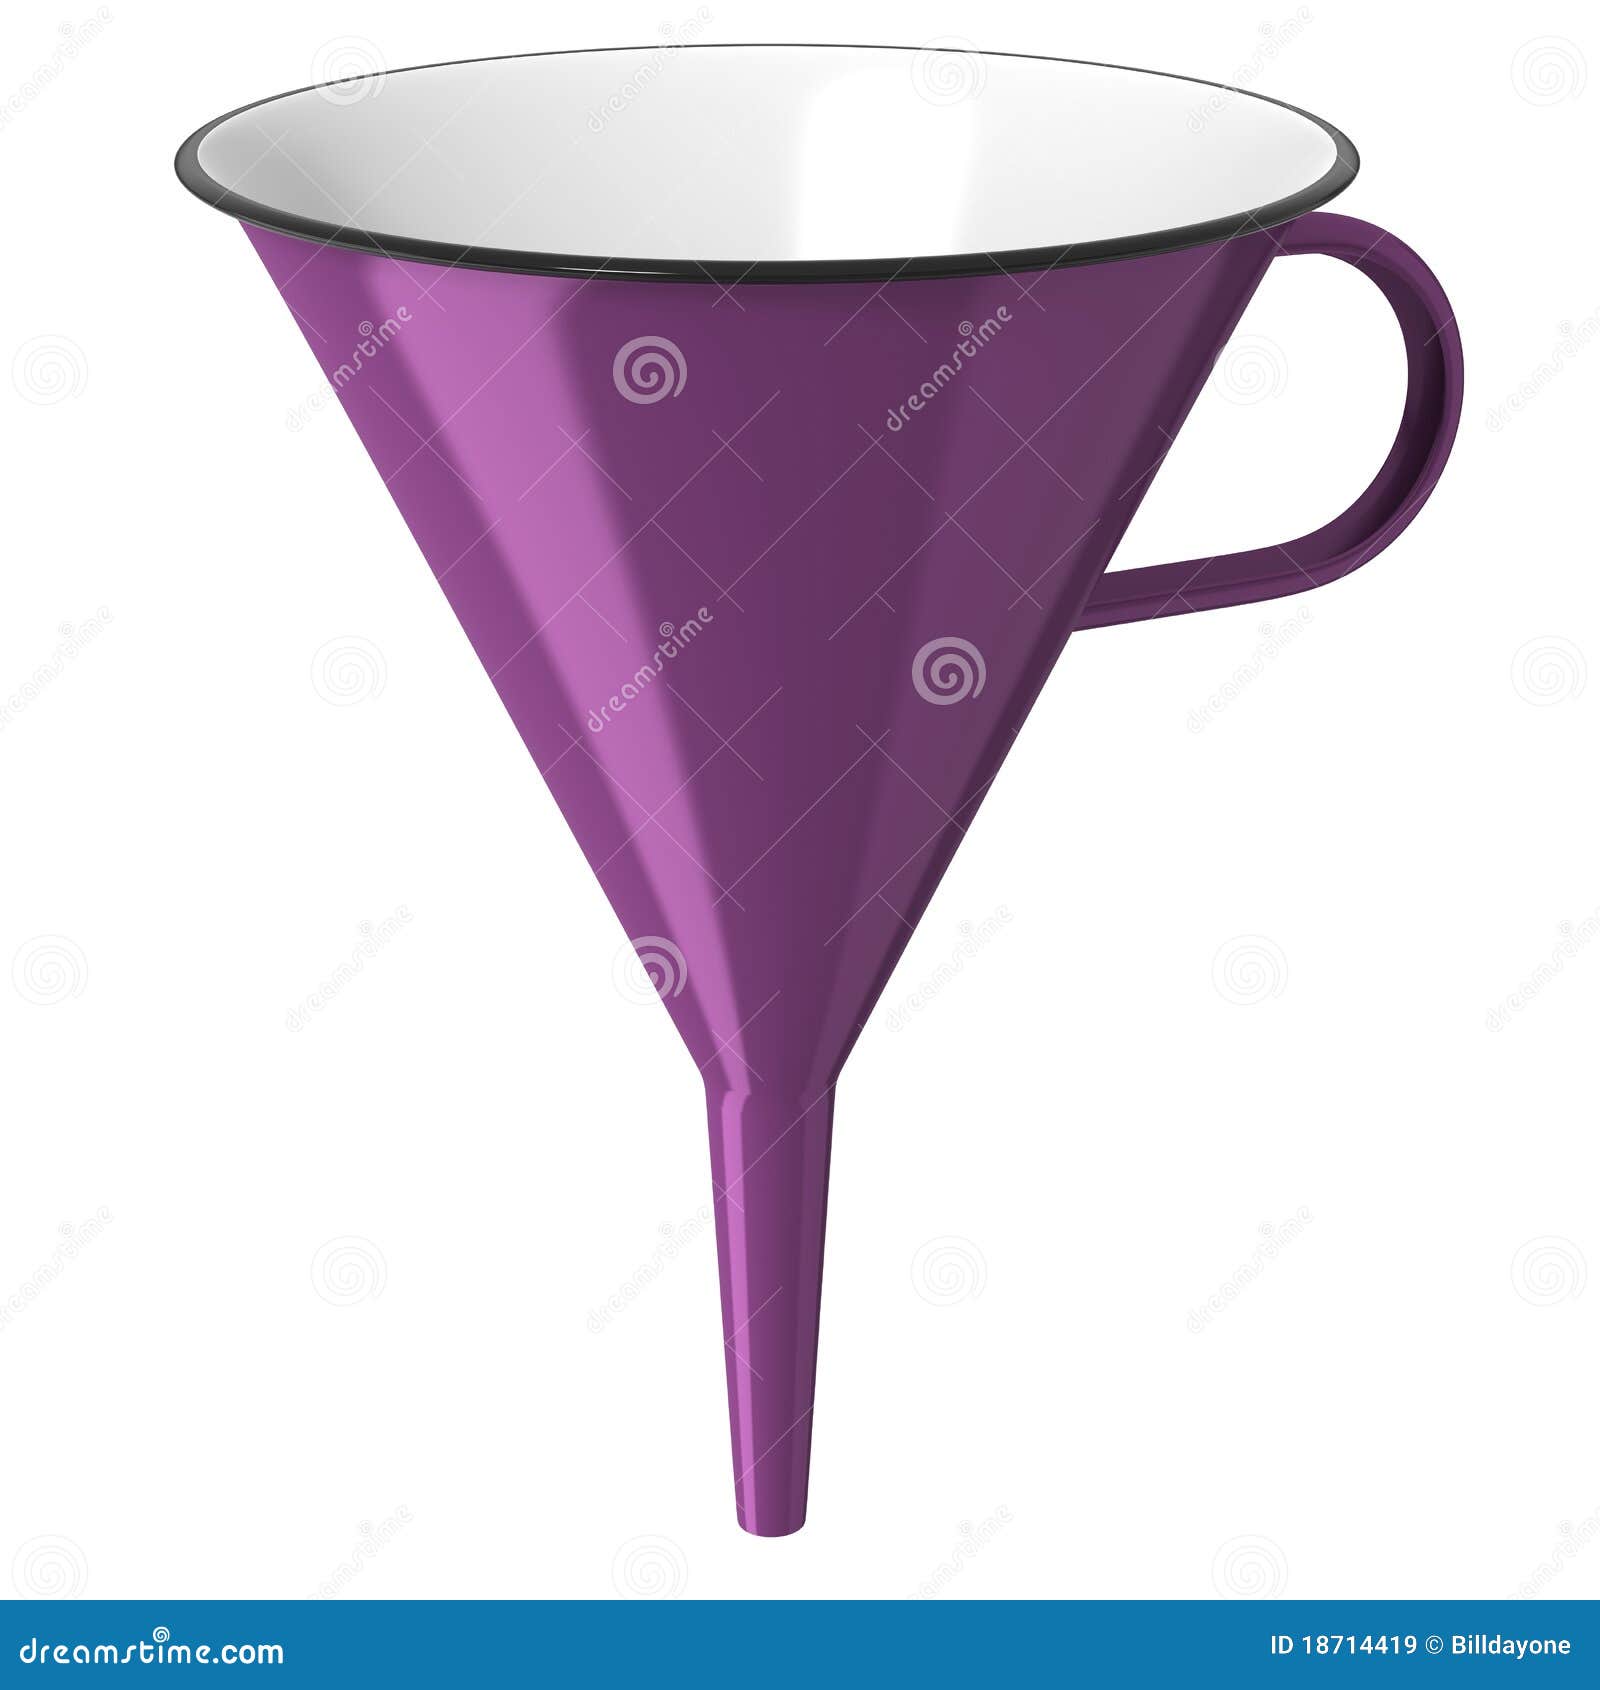 purple enamel funnel